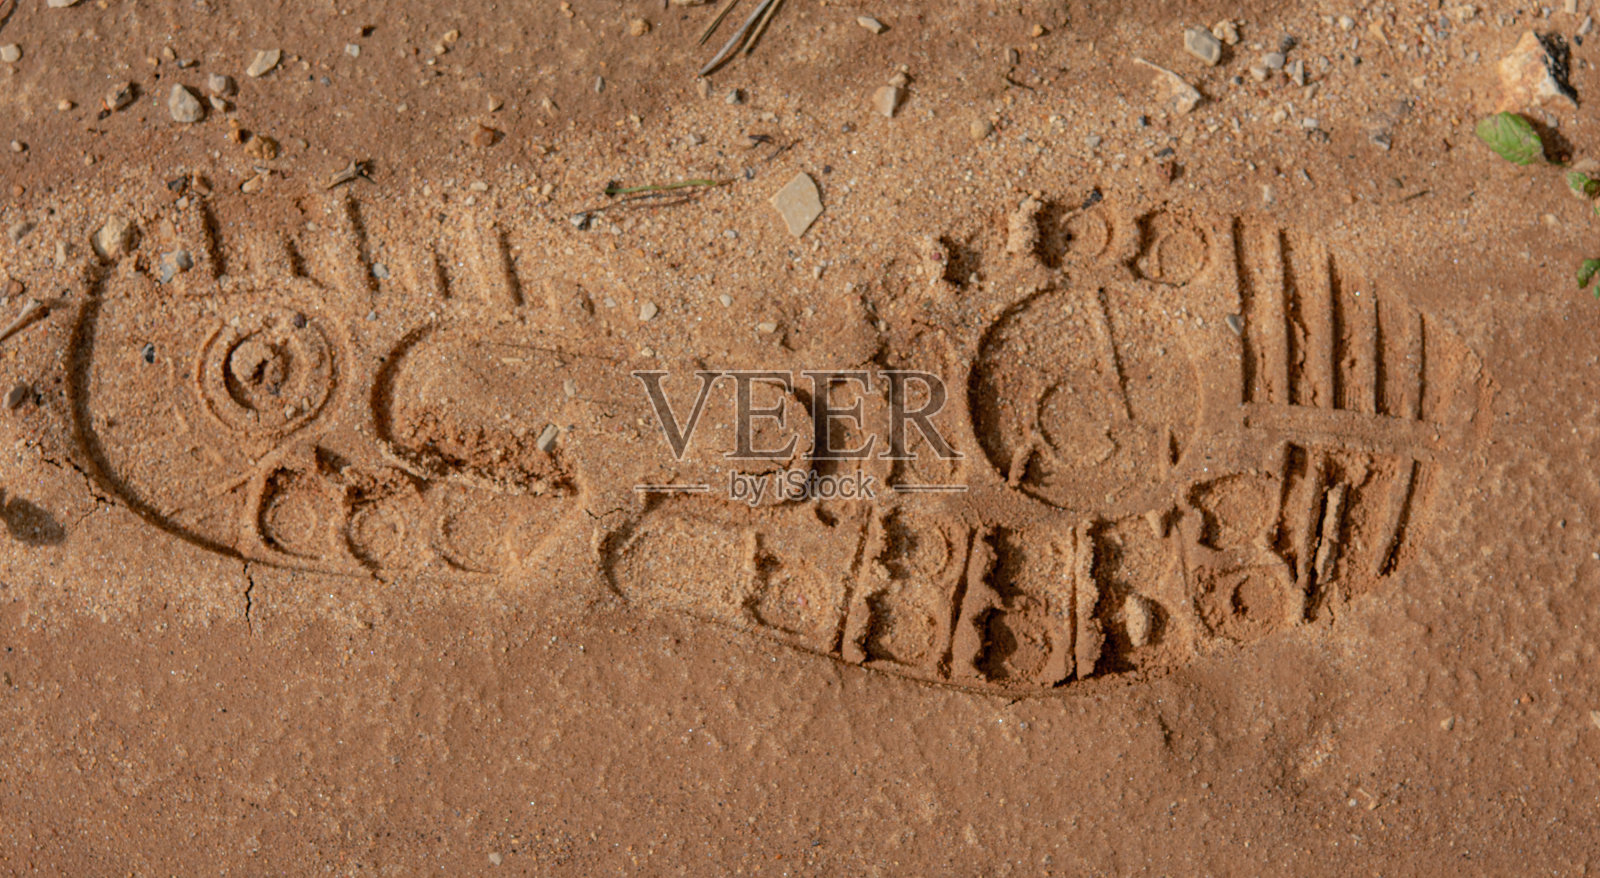 沙子上的鞋印照片摄影图片